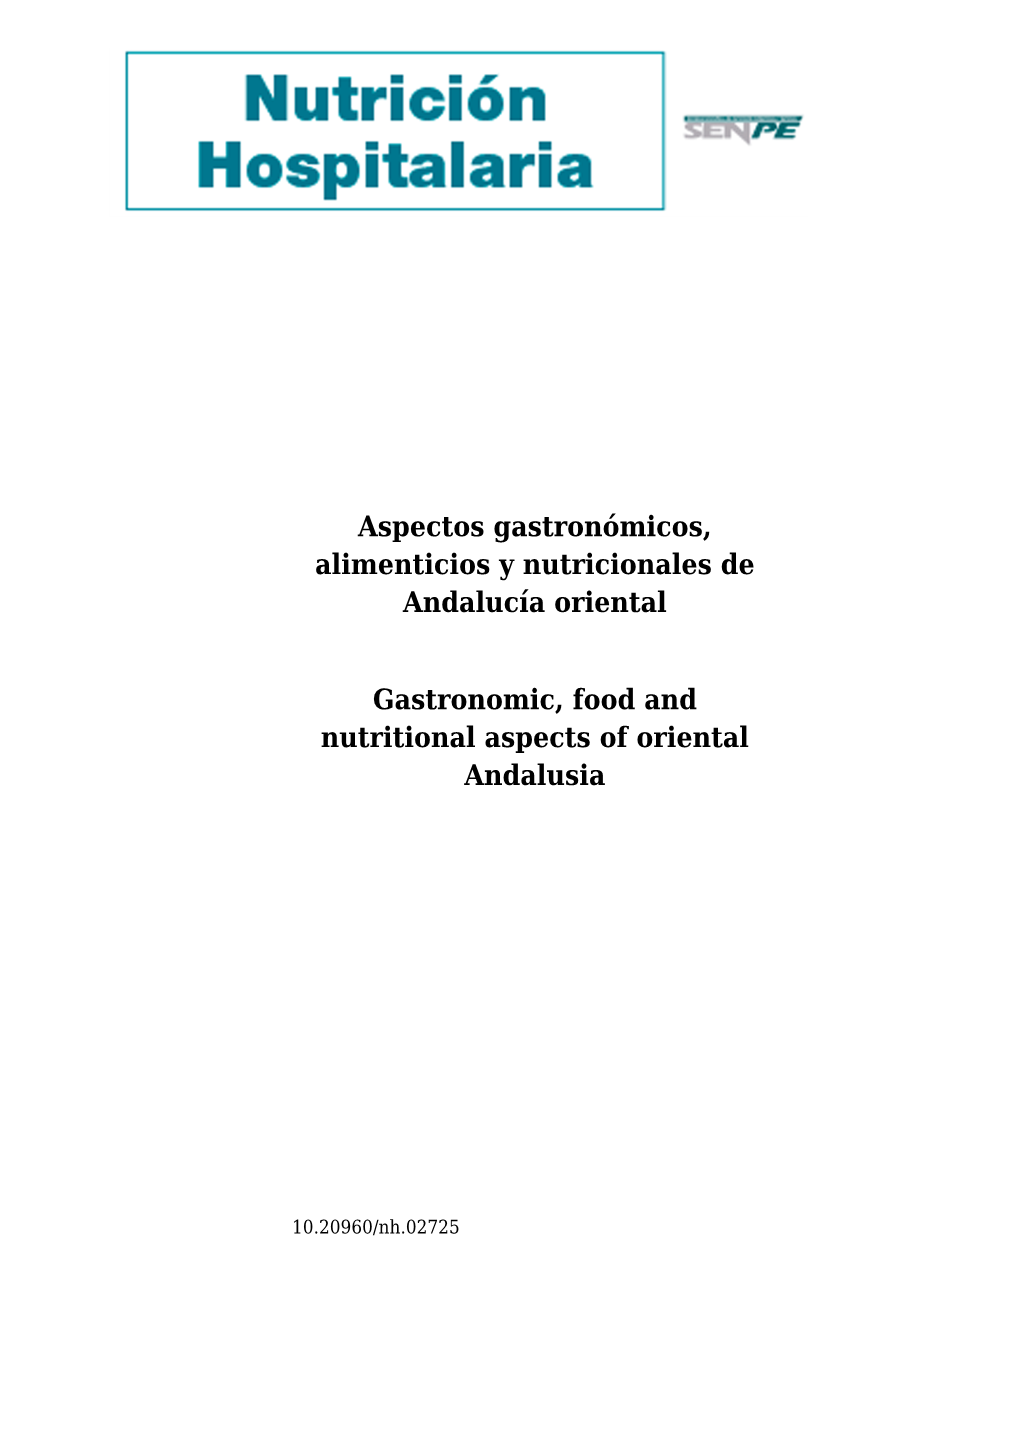 Aspectos Gastronómicos, Alimenticios Y Nutricionales De Andalucía Oriental